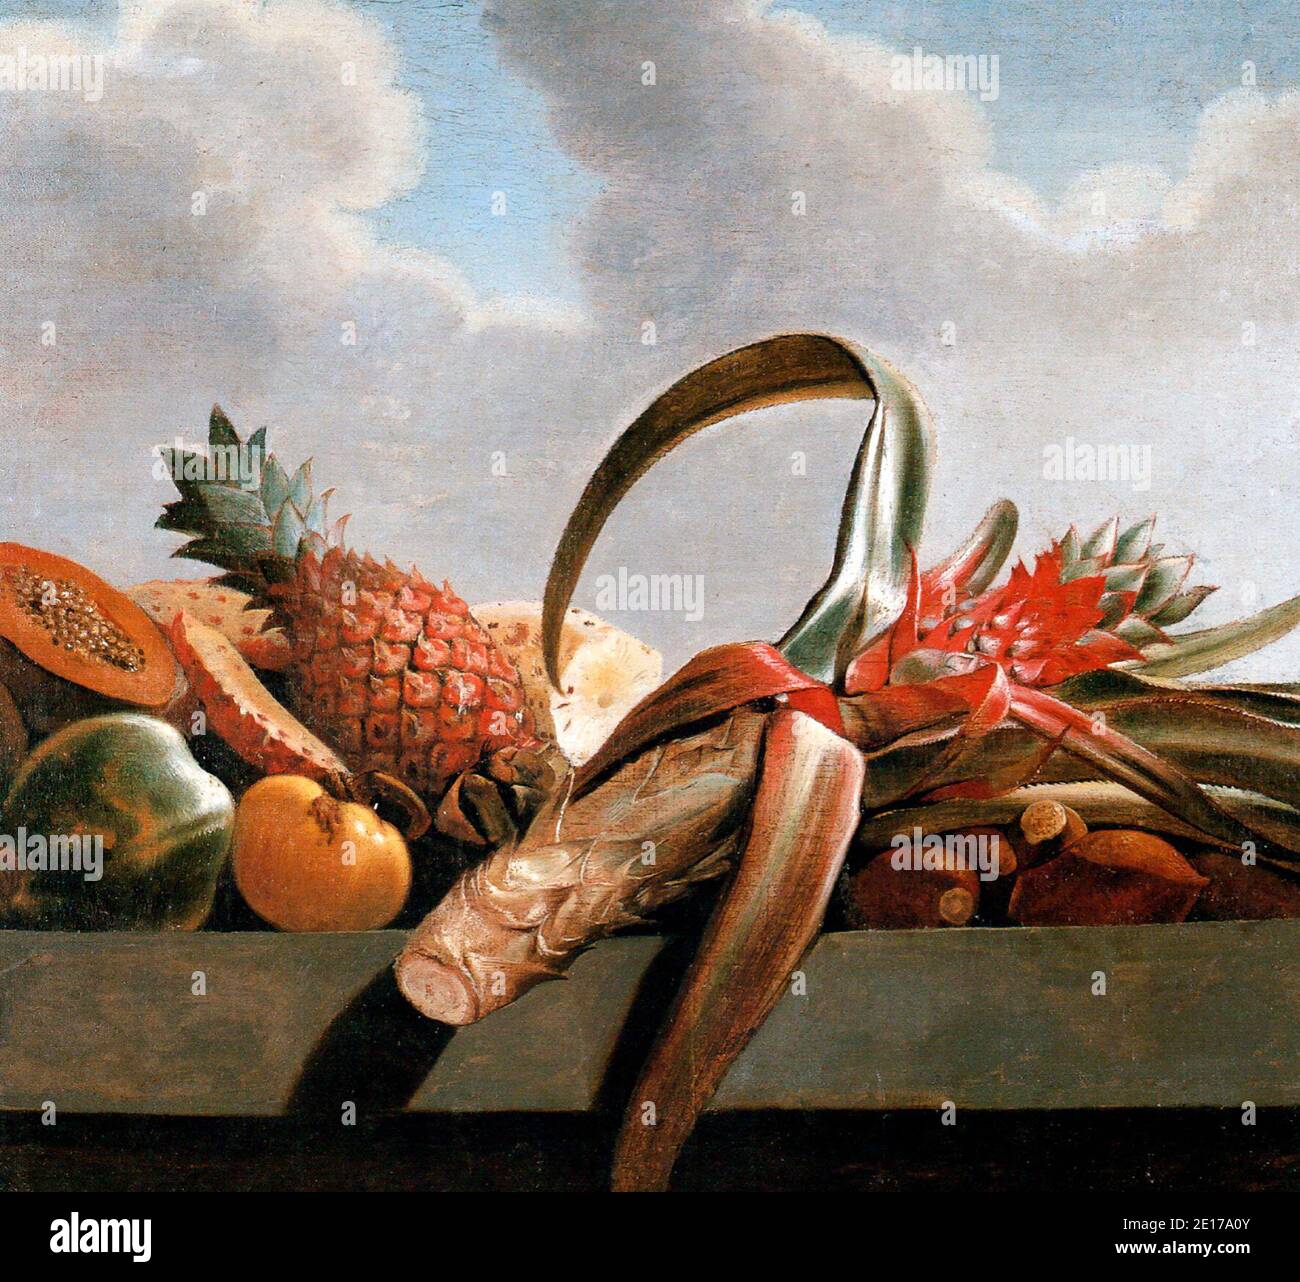 Piña, papaya y otras frutas - Albert Eckhout, 1600 Foto de stock